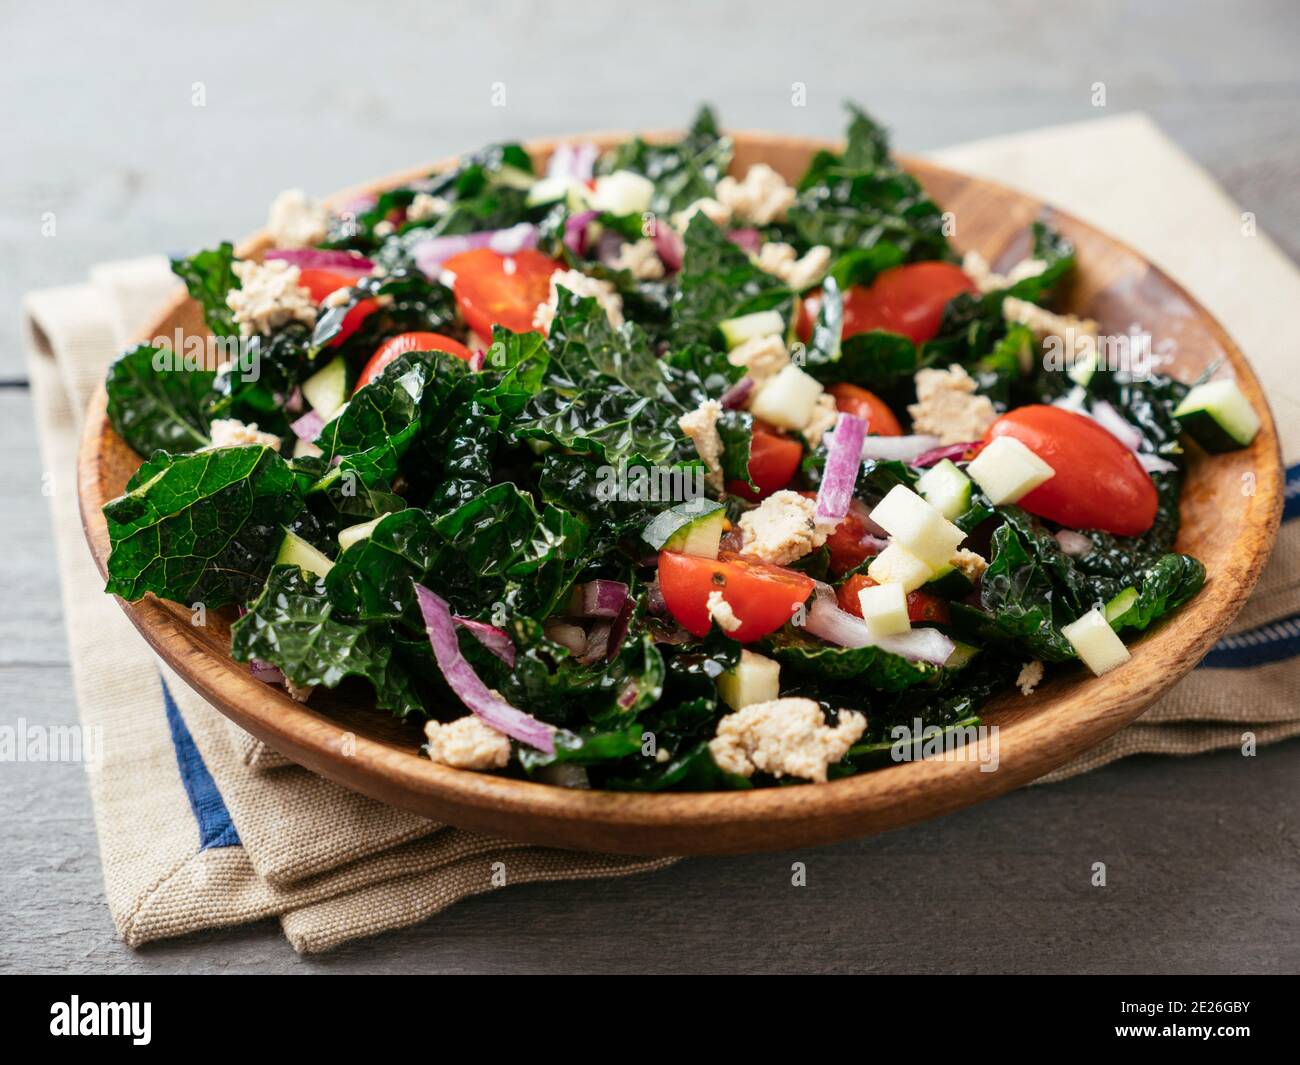 Insalata di kale in stile greco fatta in casa con feta vegana fatta in casa Foto Stock